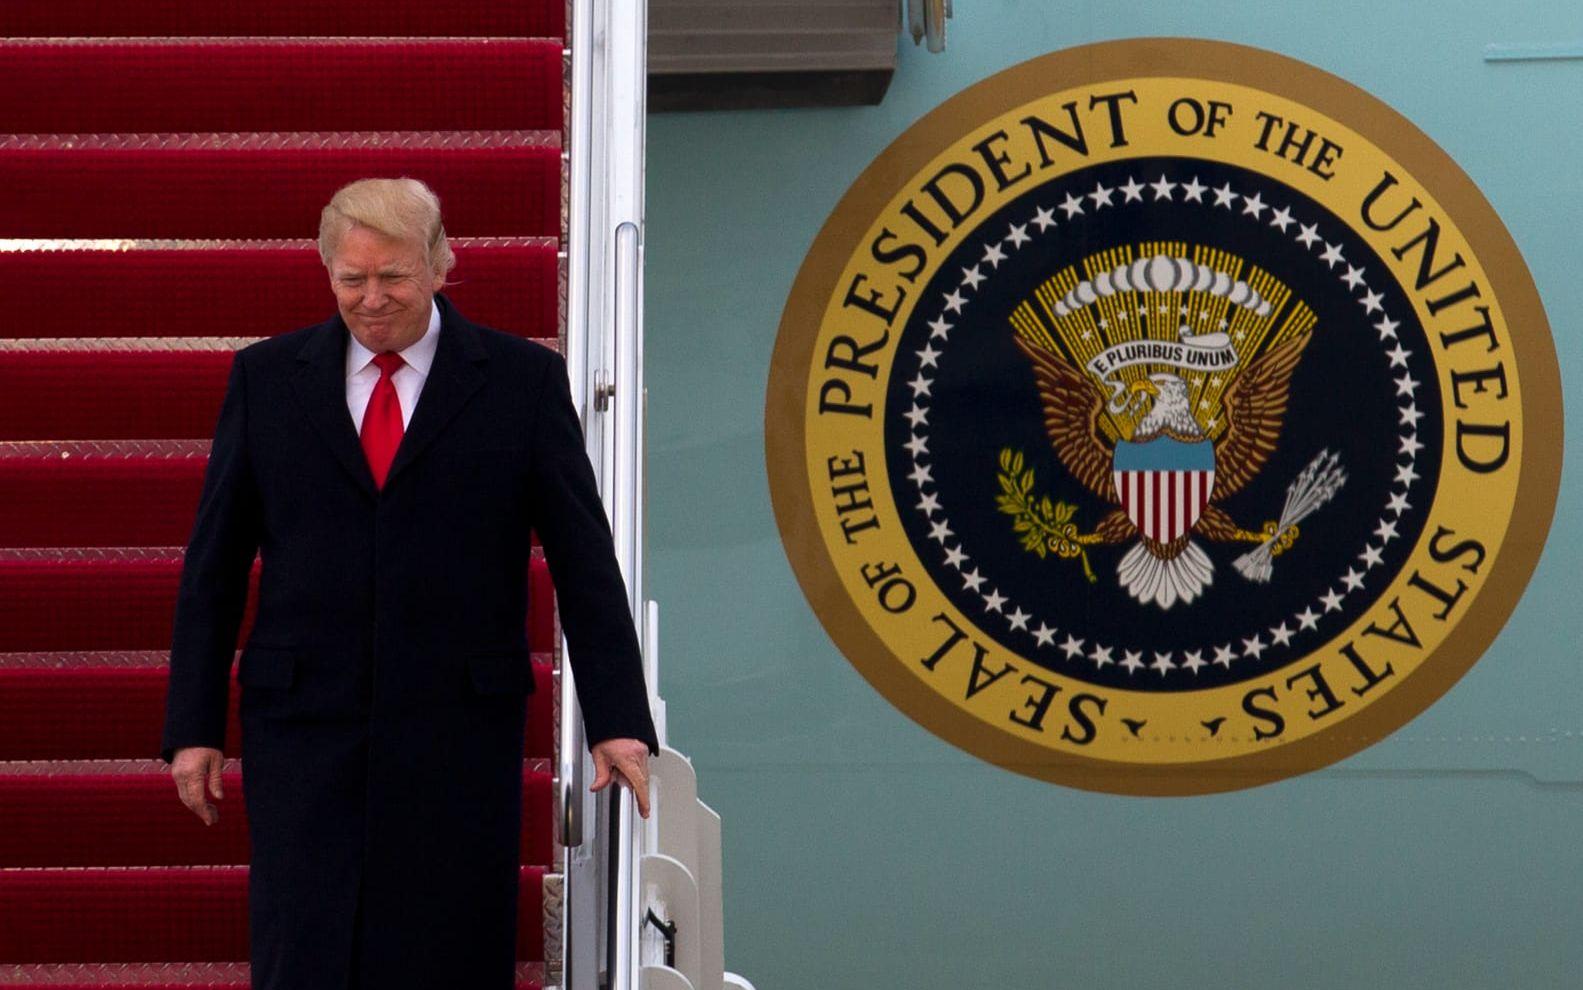 19 MARS: Trump anländer till Andrews Air Force base i Maryland efter ett besök i Florida. Foto: TT